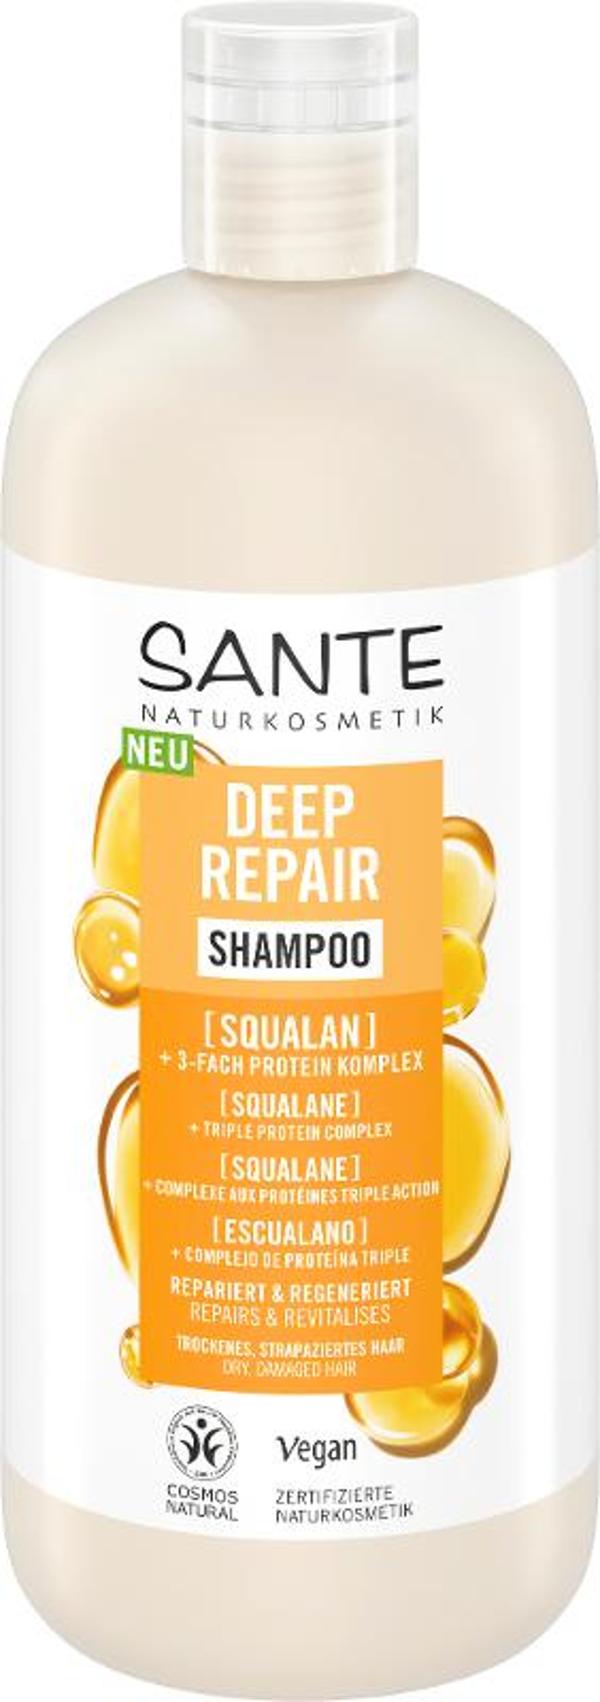 Produktfoto zu Deep Repair Shampoo Squalan 500ml